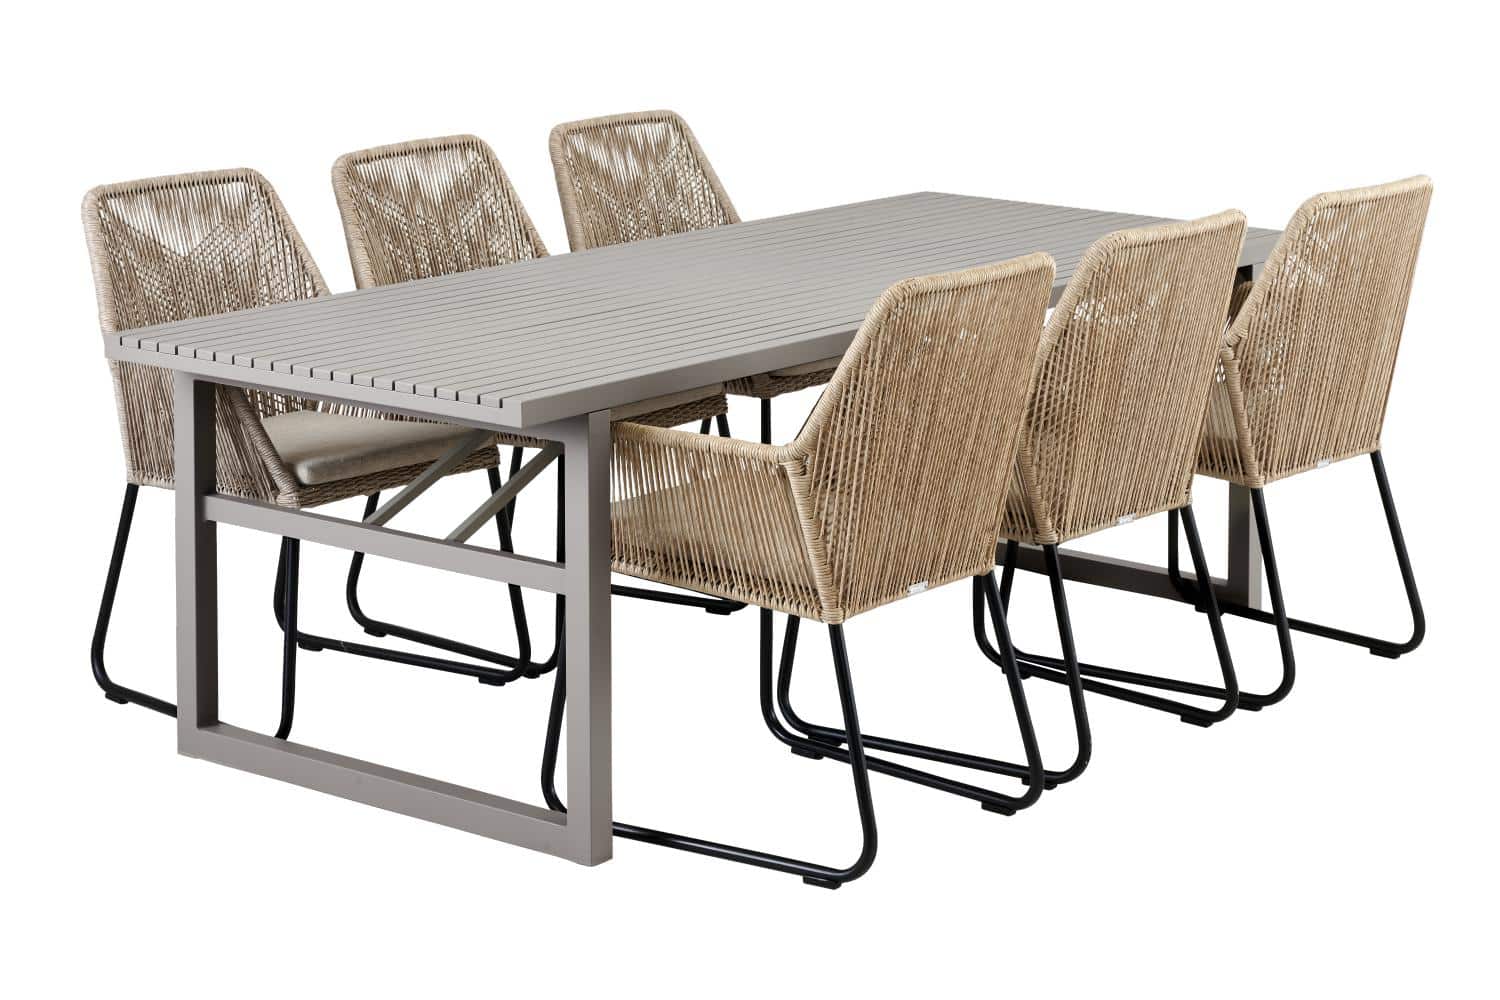 Brafab Vevi Matbord khaki är ett matbord 230×95 cm tillverkat i beige/khakifärgad underhållsfri aluminium. Med 6 st Midway matstolar beige.